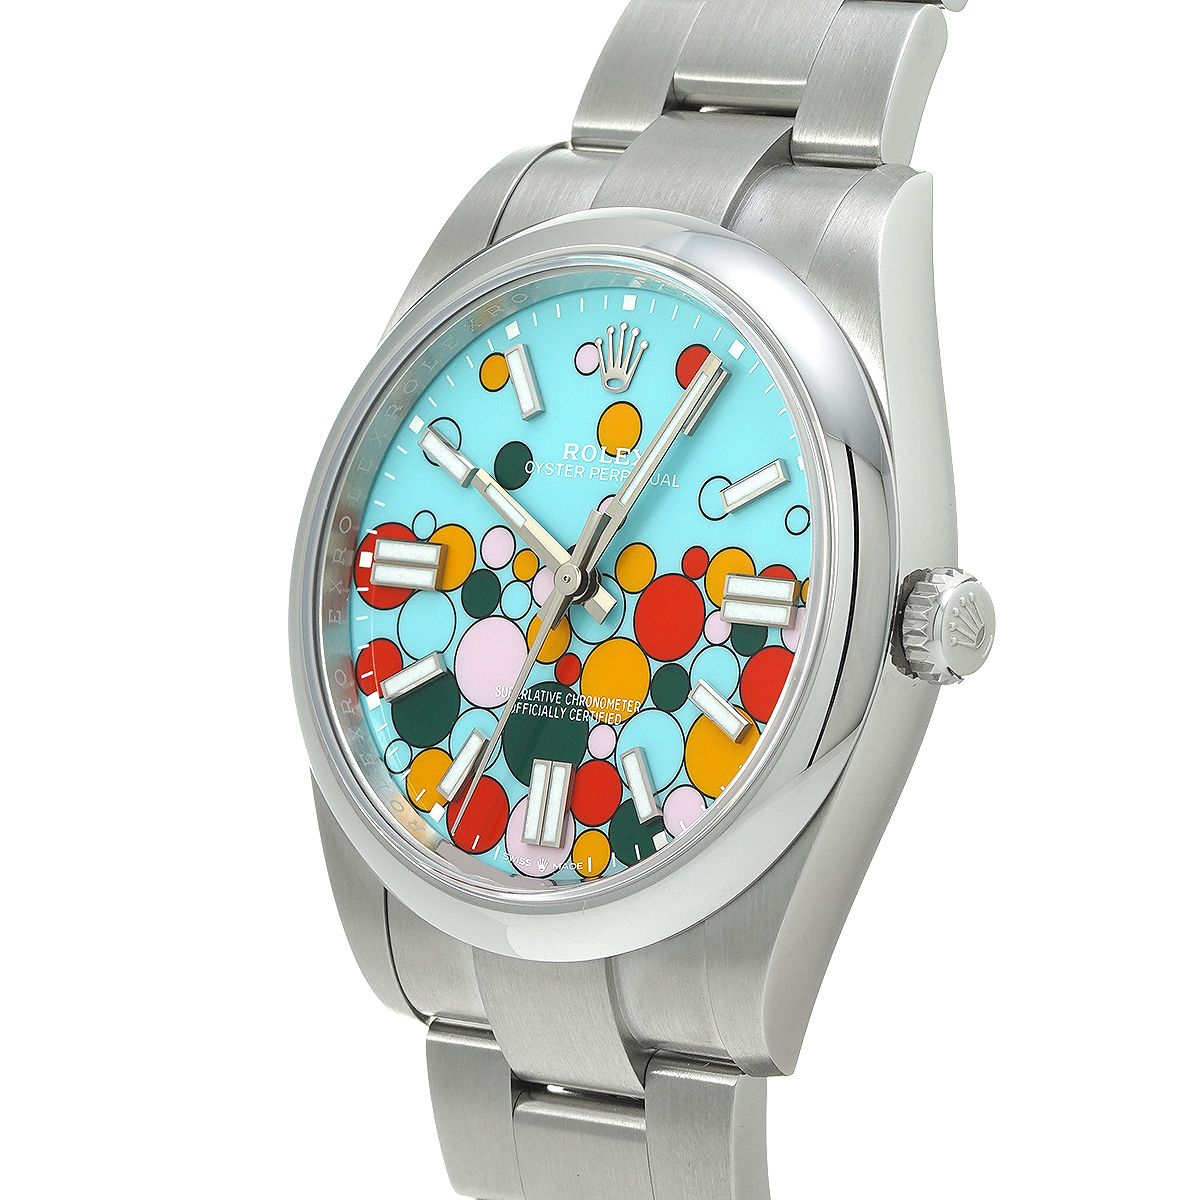 ロレックス / ROLEX オイスターパーペチュアル 41 124300 ターコイズブルー セレブレーションモチーフ メンズ 時計  【未使用】【wristwatch】